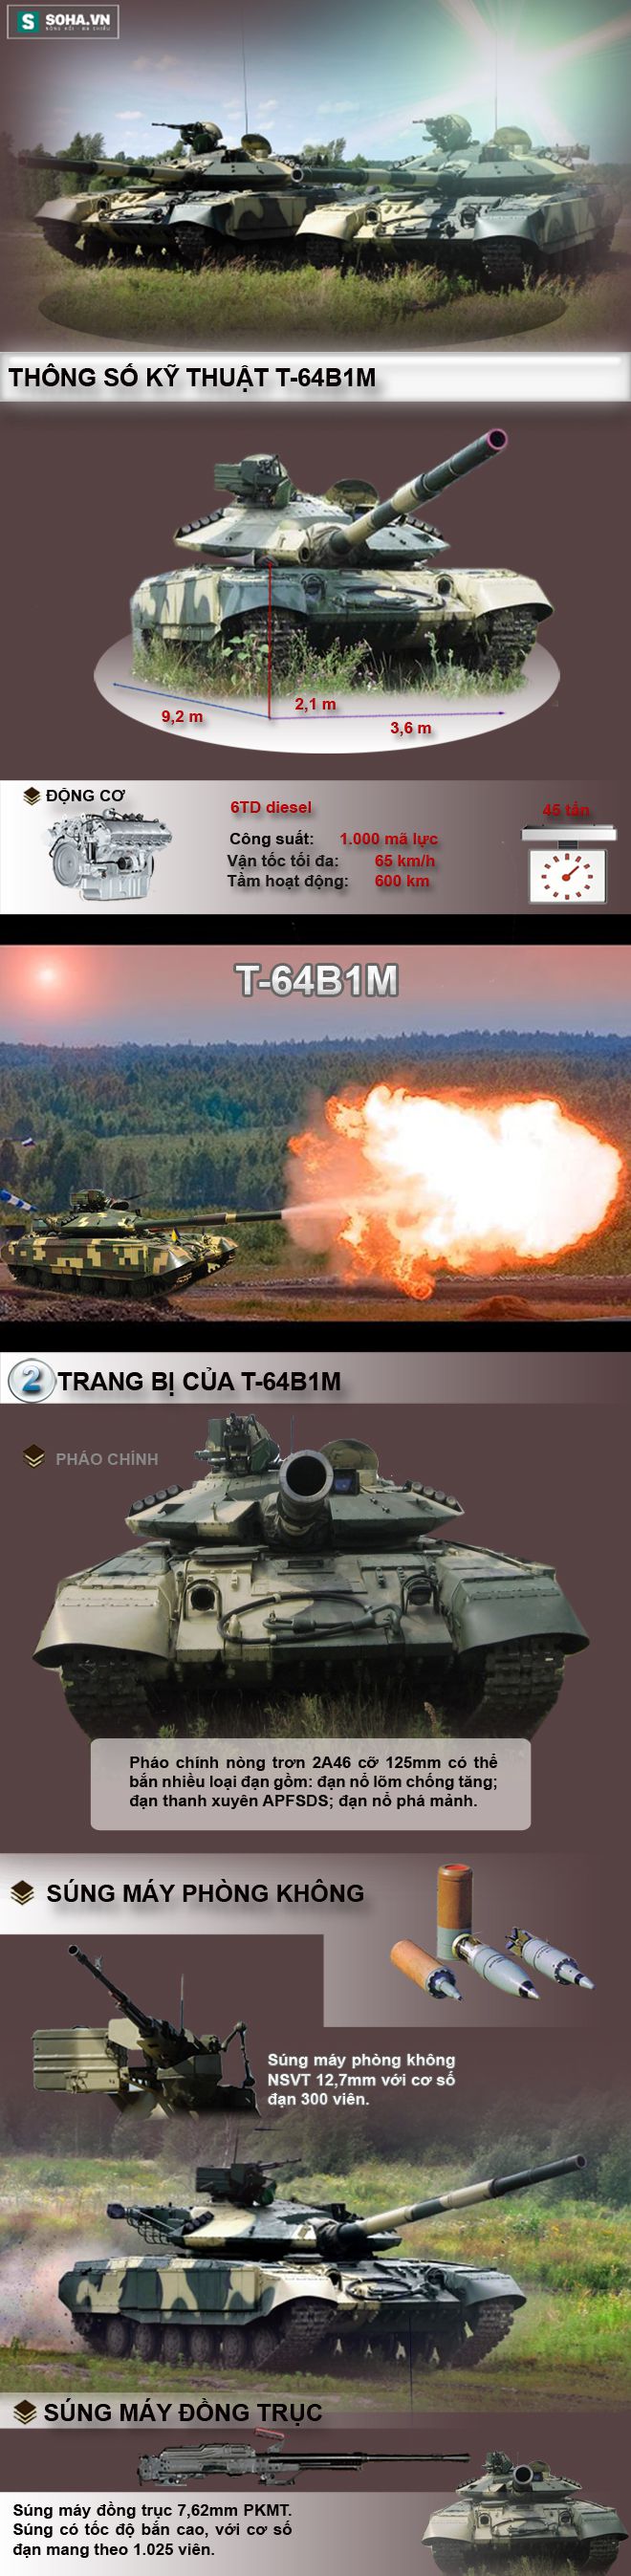 Xe tăng chiến đấu chủ lực T-64B1M - Đối thủ xứng tầm của T-72B3 - Ảnh 2.